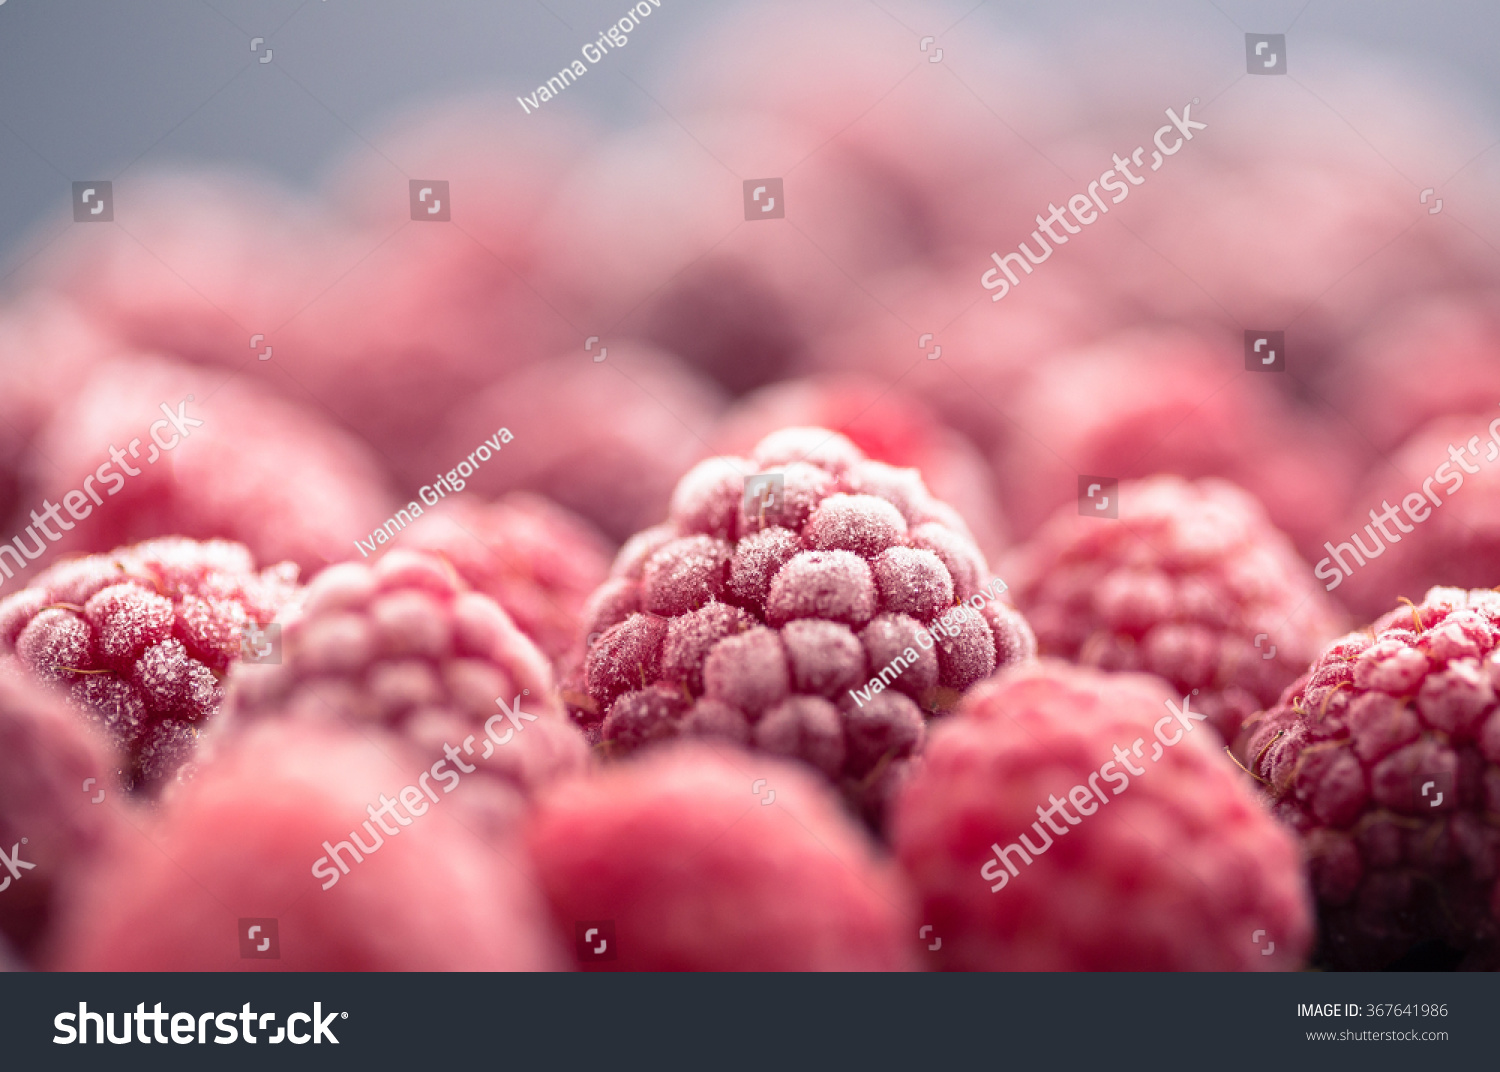  frozen raspberry on dark background #367641986